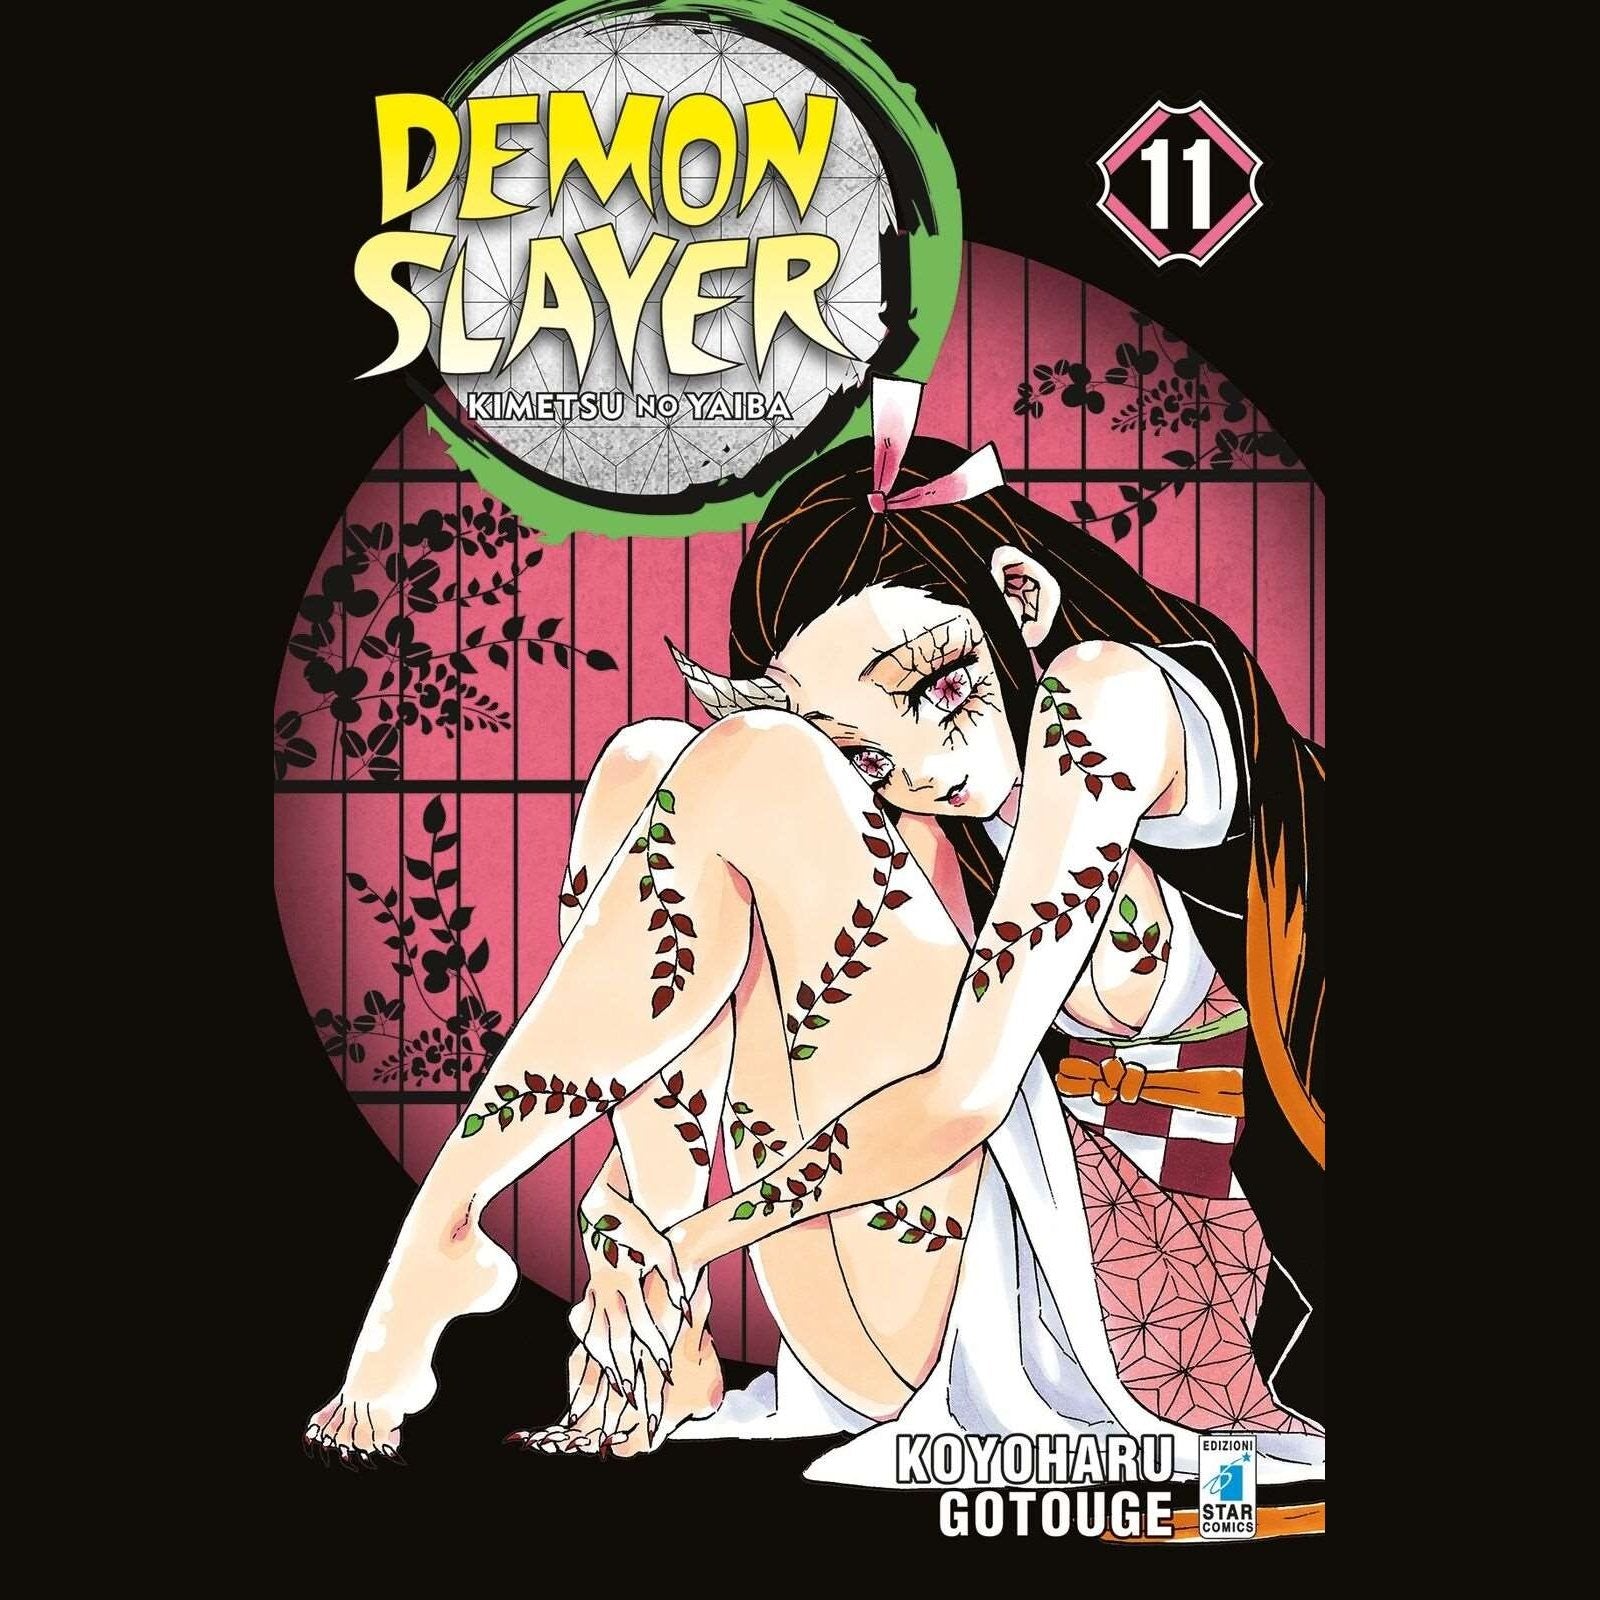 Demon Slayer Kimetsu no Yaiba 11 ITA nerd-pug